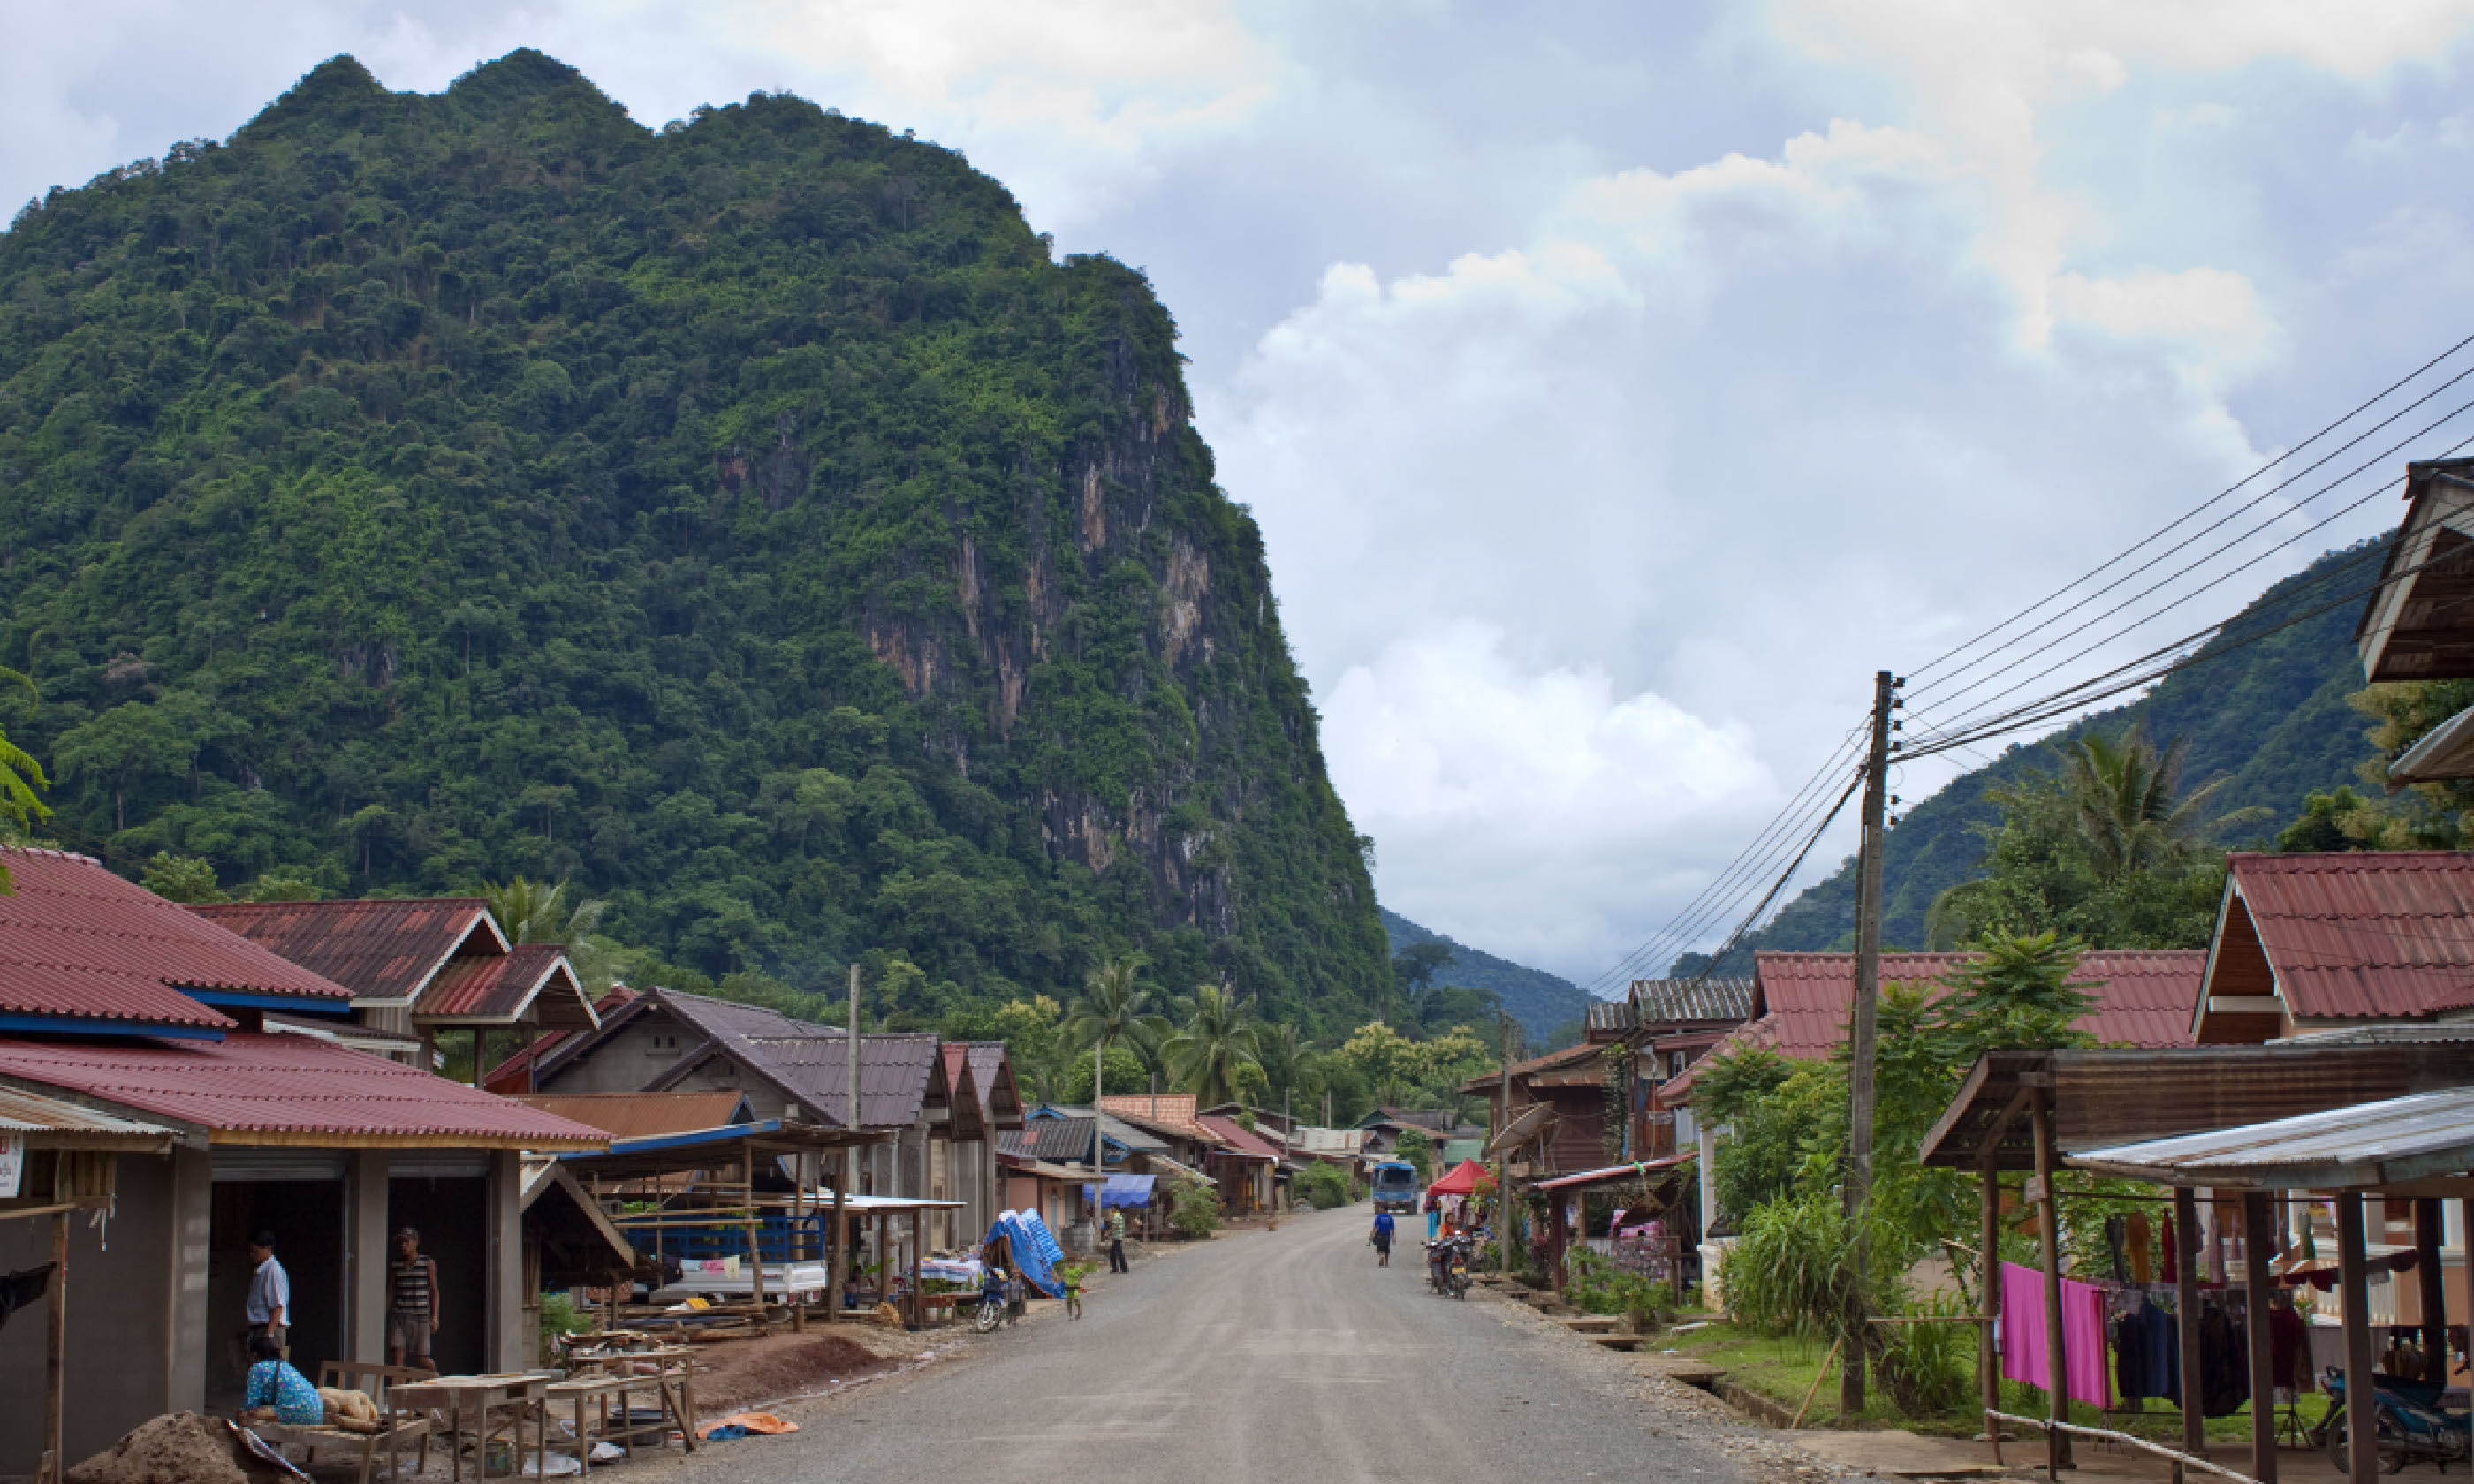 Nong Khiaw, Laos (Shutterstock)